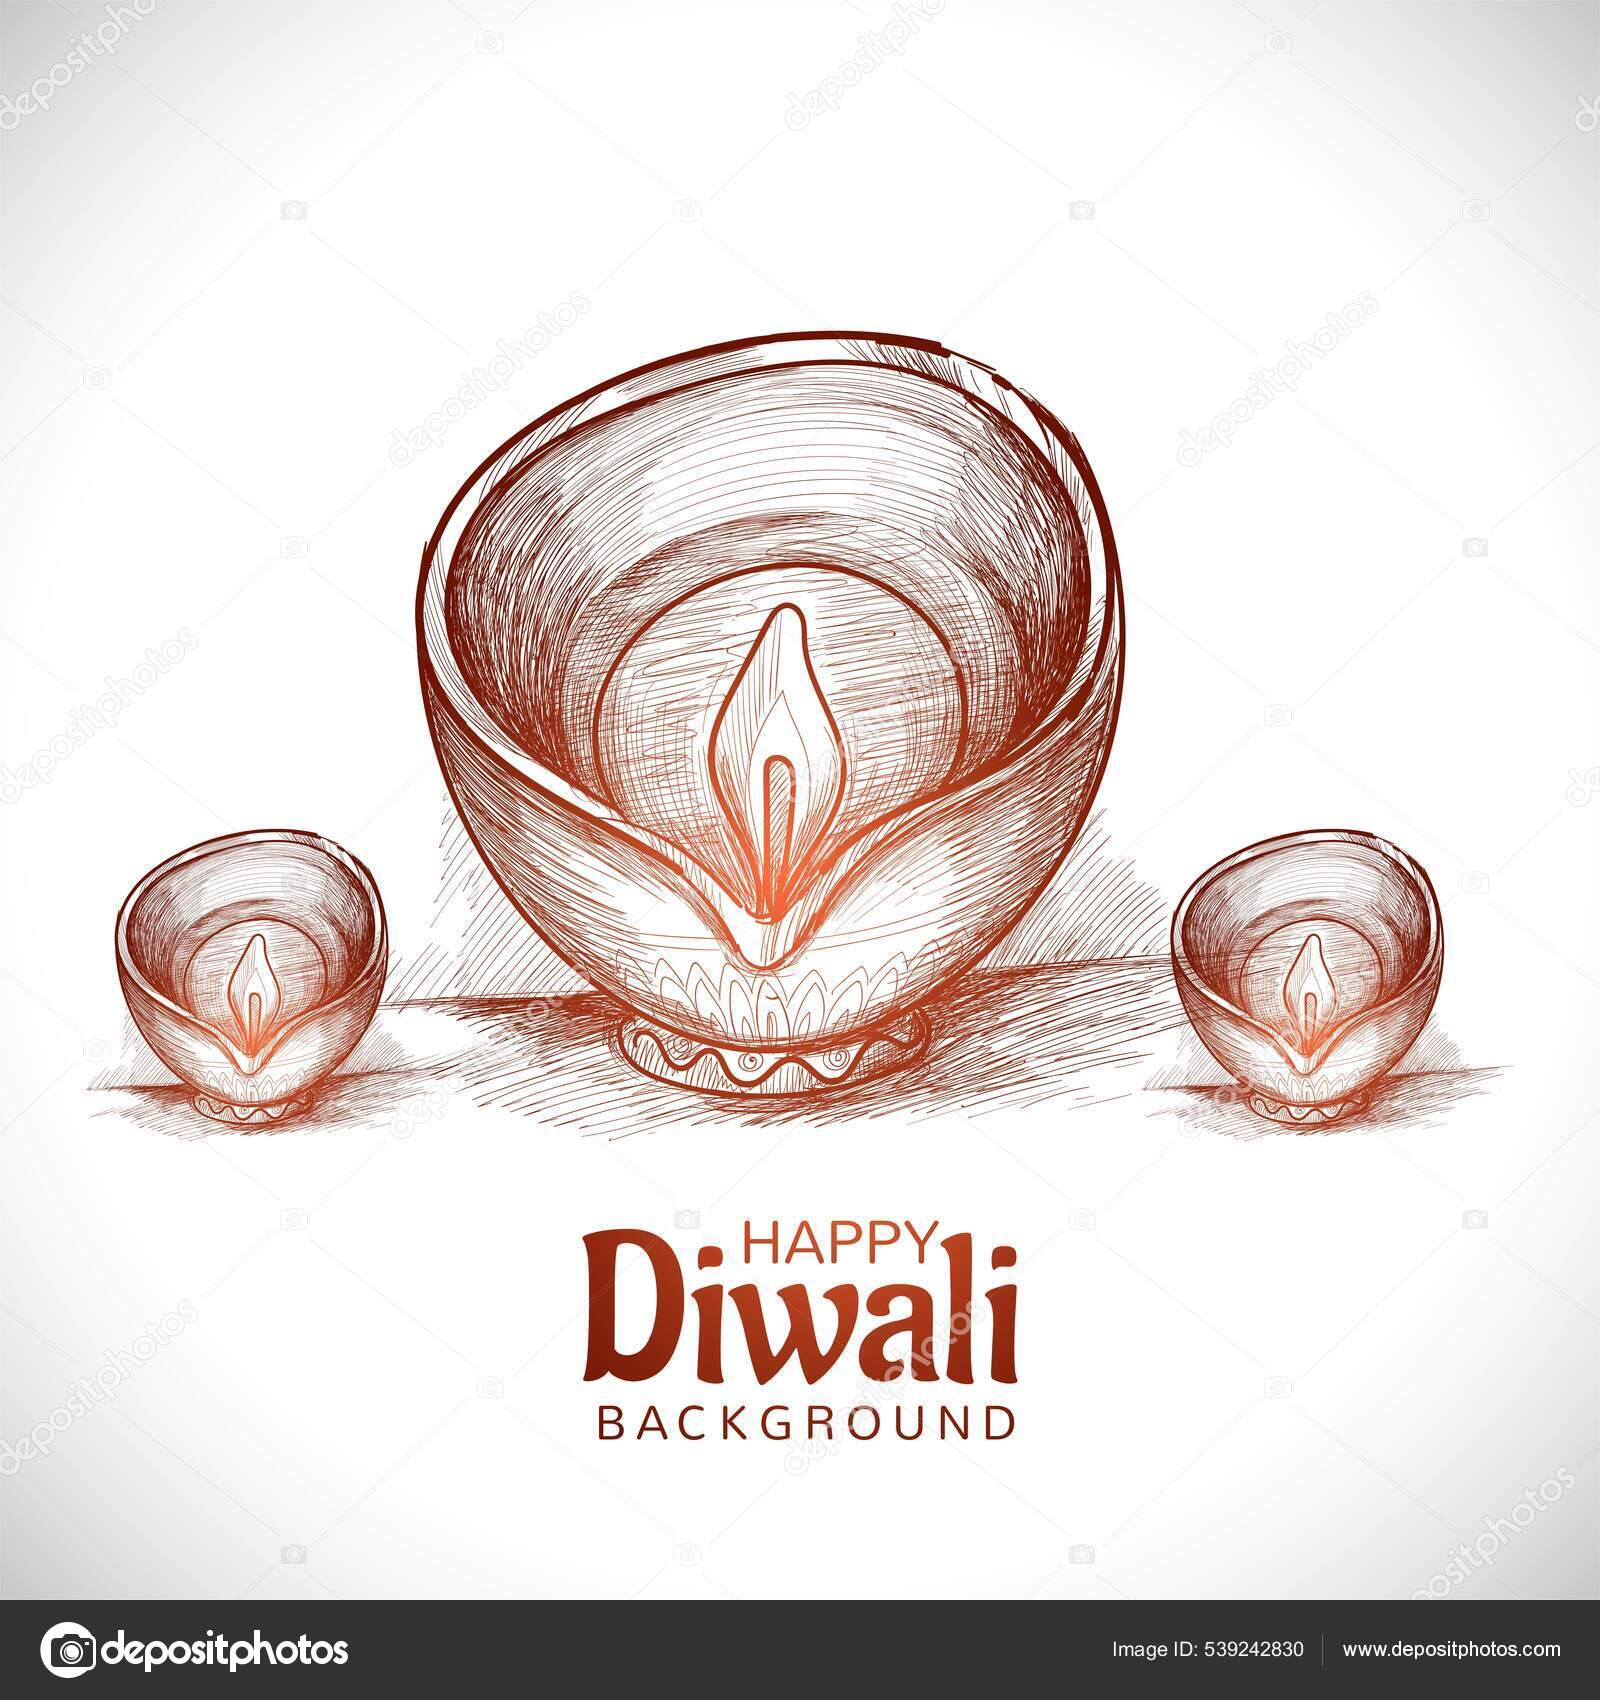 Best Indian family celebrating Diwali festival Illustration download in PNG   Vector format